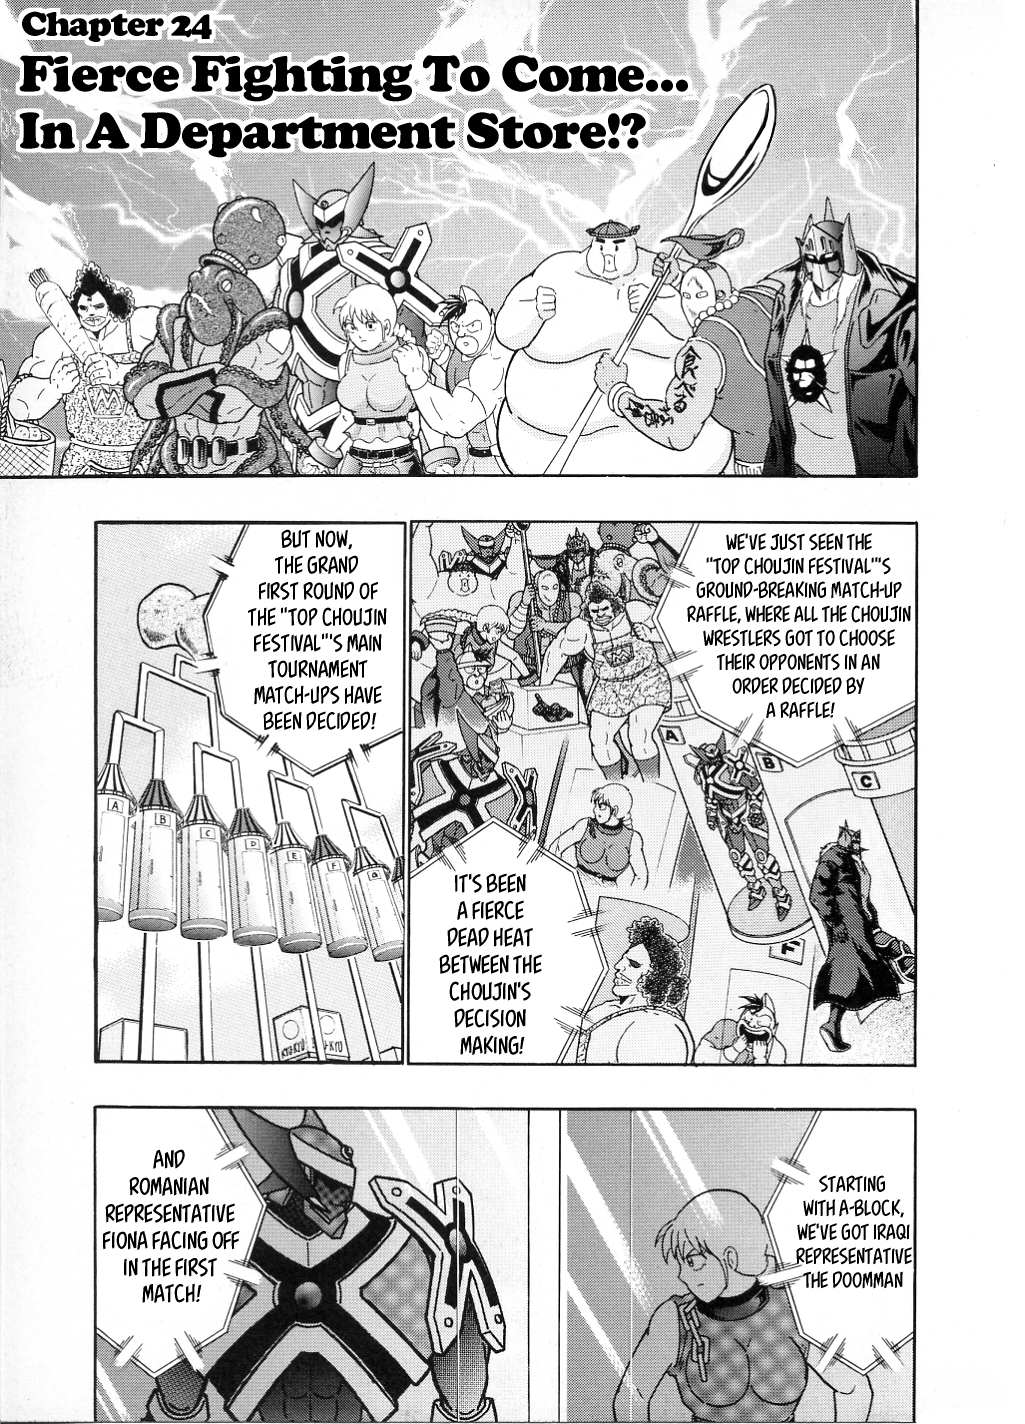 Kinnikuman II Sei: All Choujin Daishingeki Vol. 2 Ch. 24 Fierce Fighting to Come... In a Department Store!?